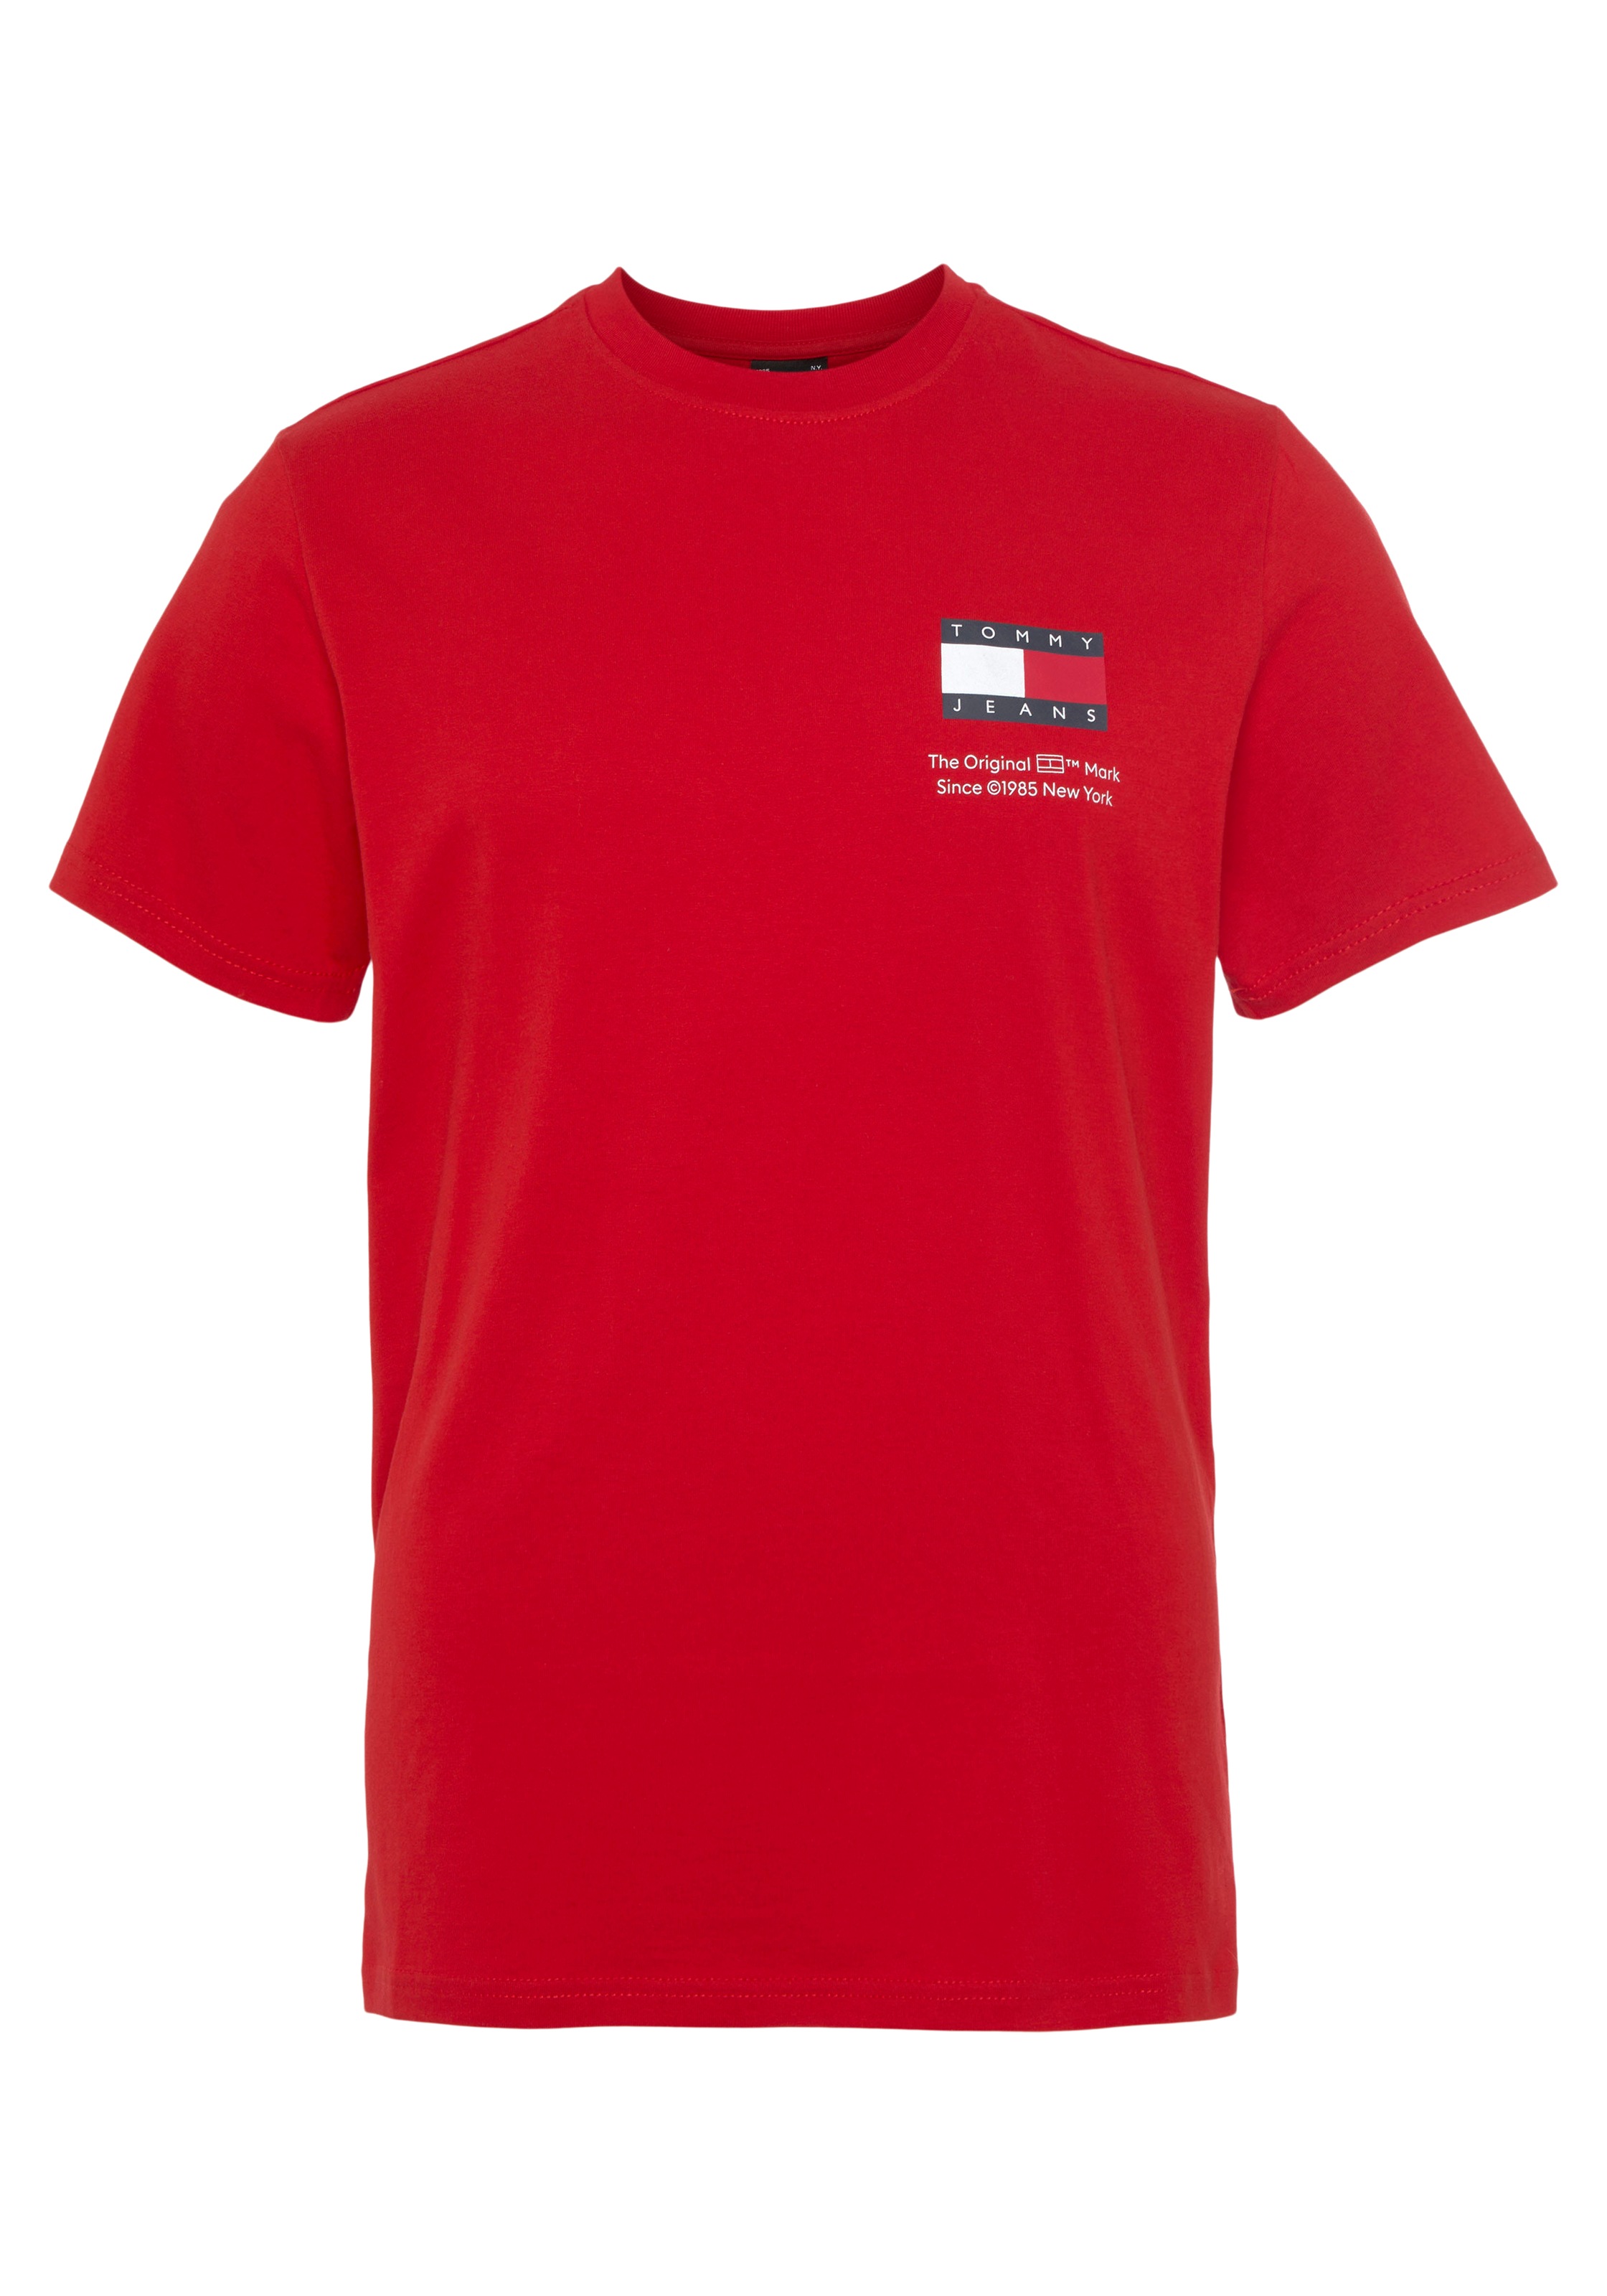 bestellen versandkostenfrei ➤ T-Shirts Mindestbestellwert - ohne